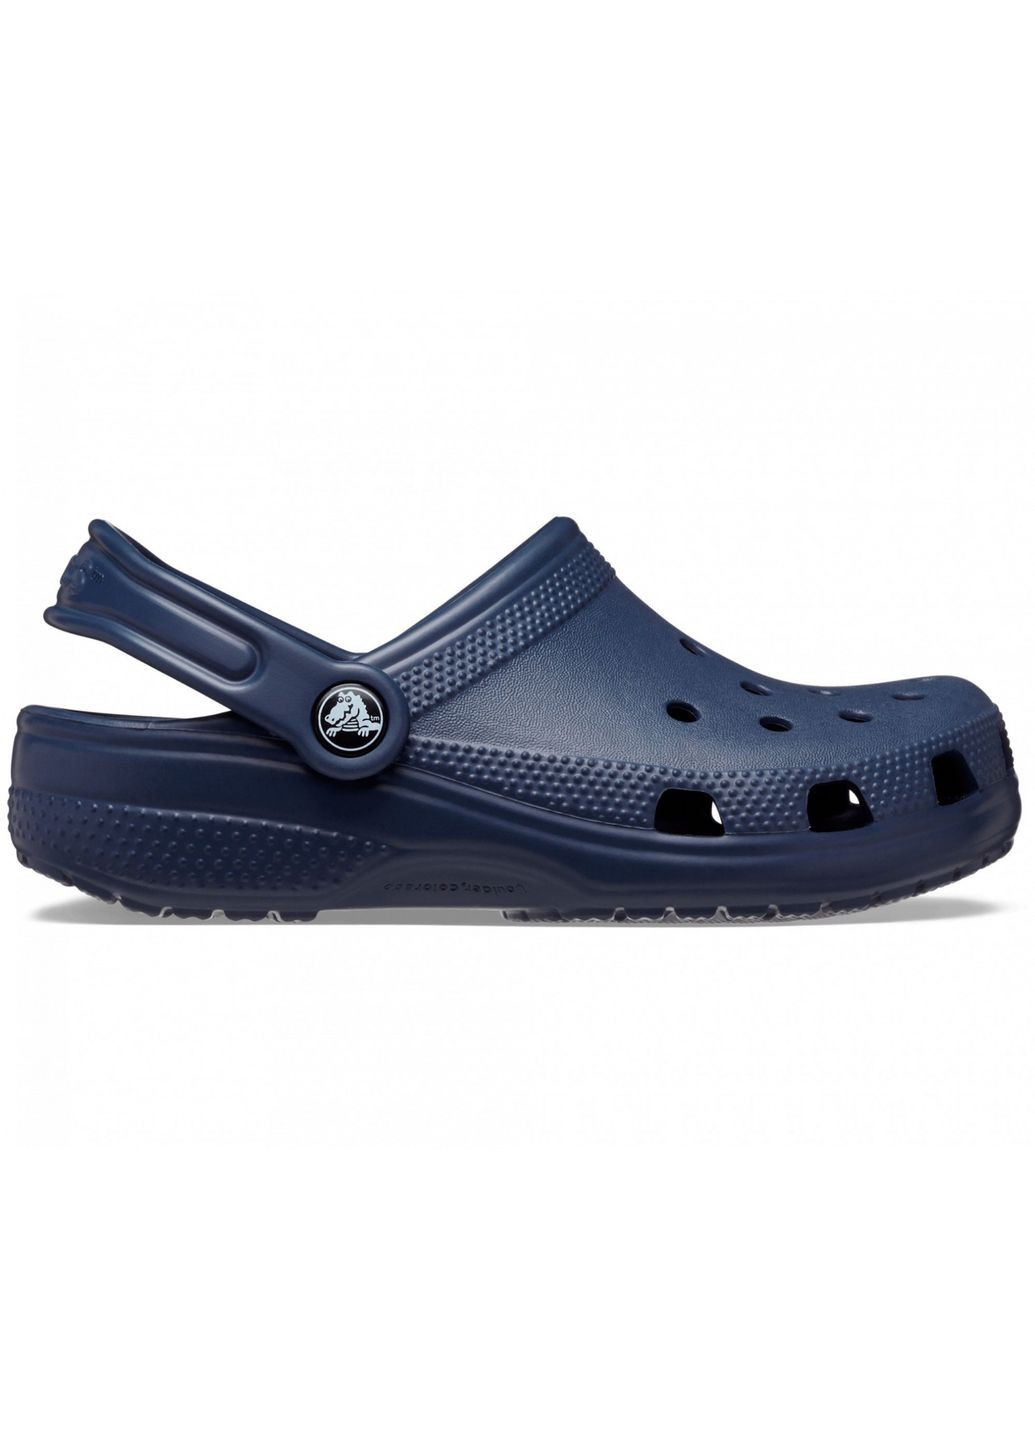 Синие сабо kids classic clog navy c13\30\19.5 см 206991 Crocs